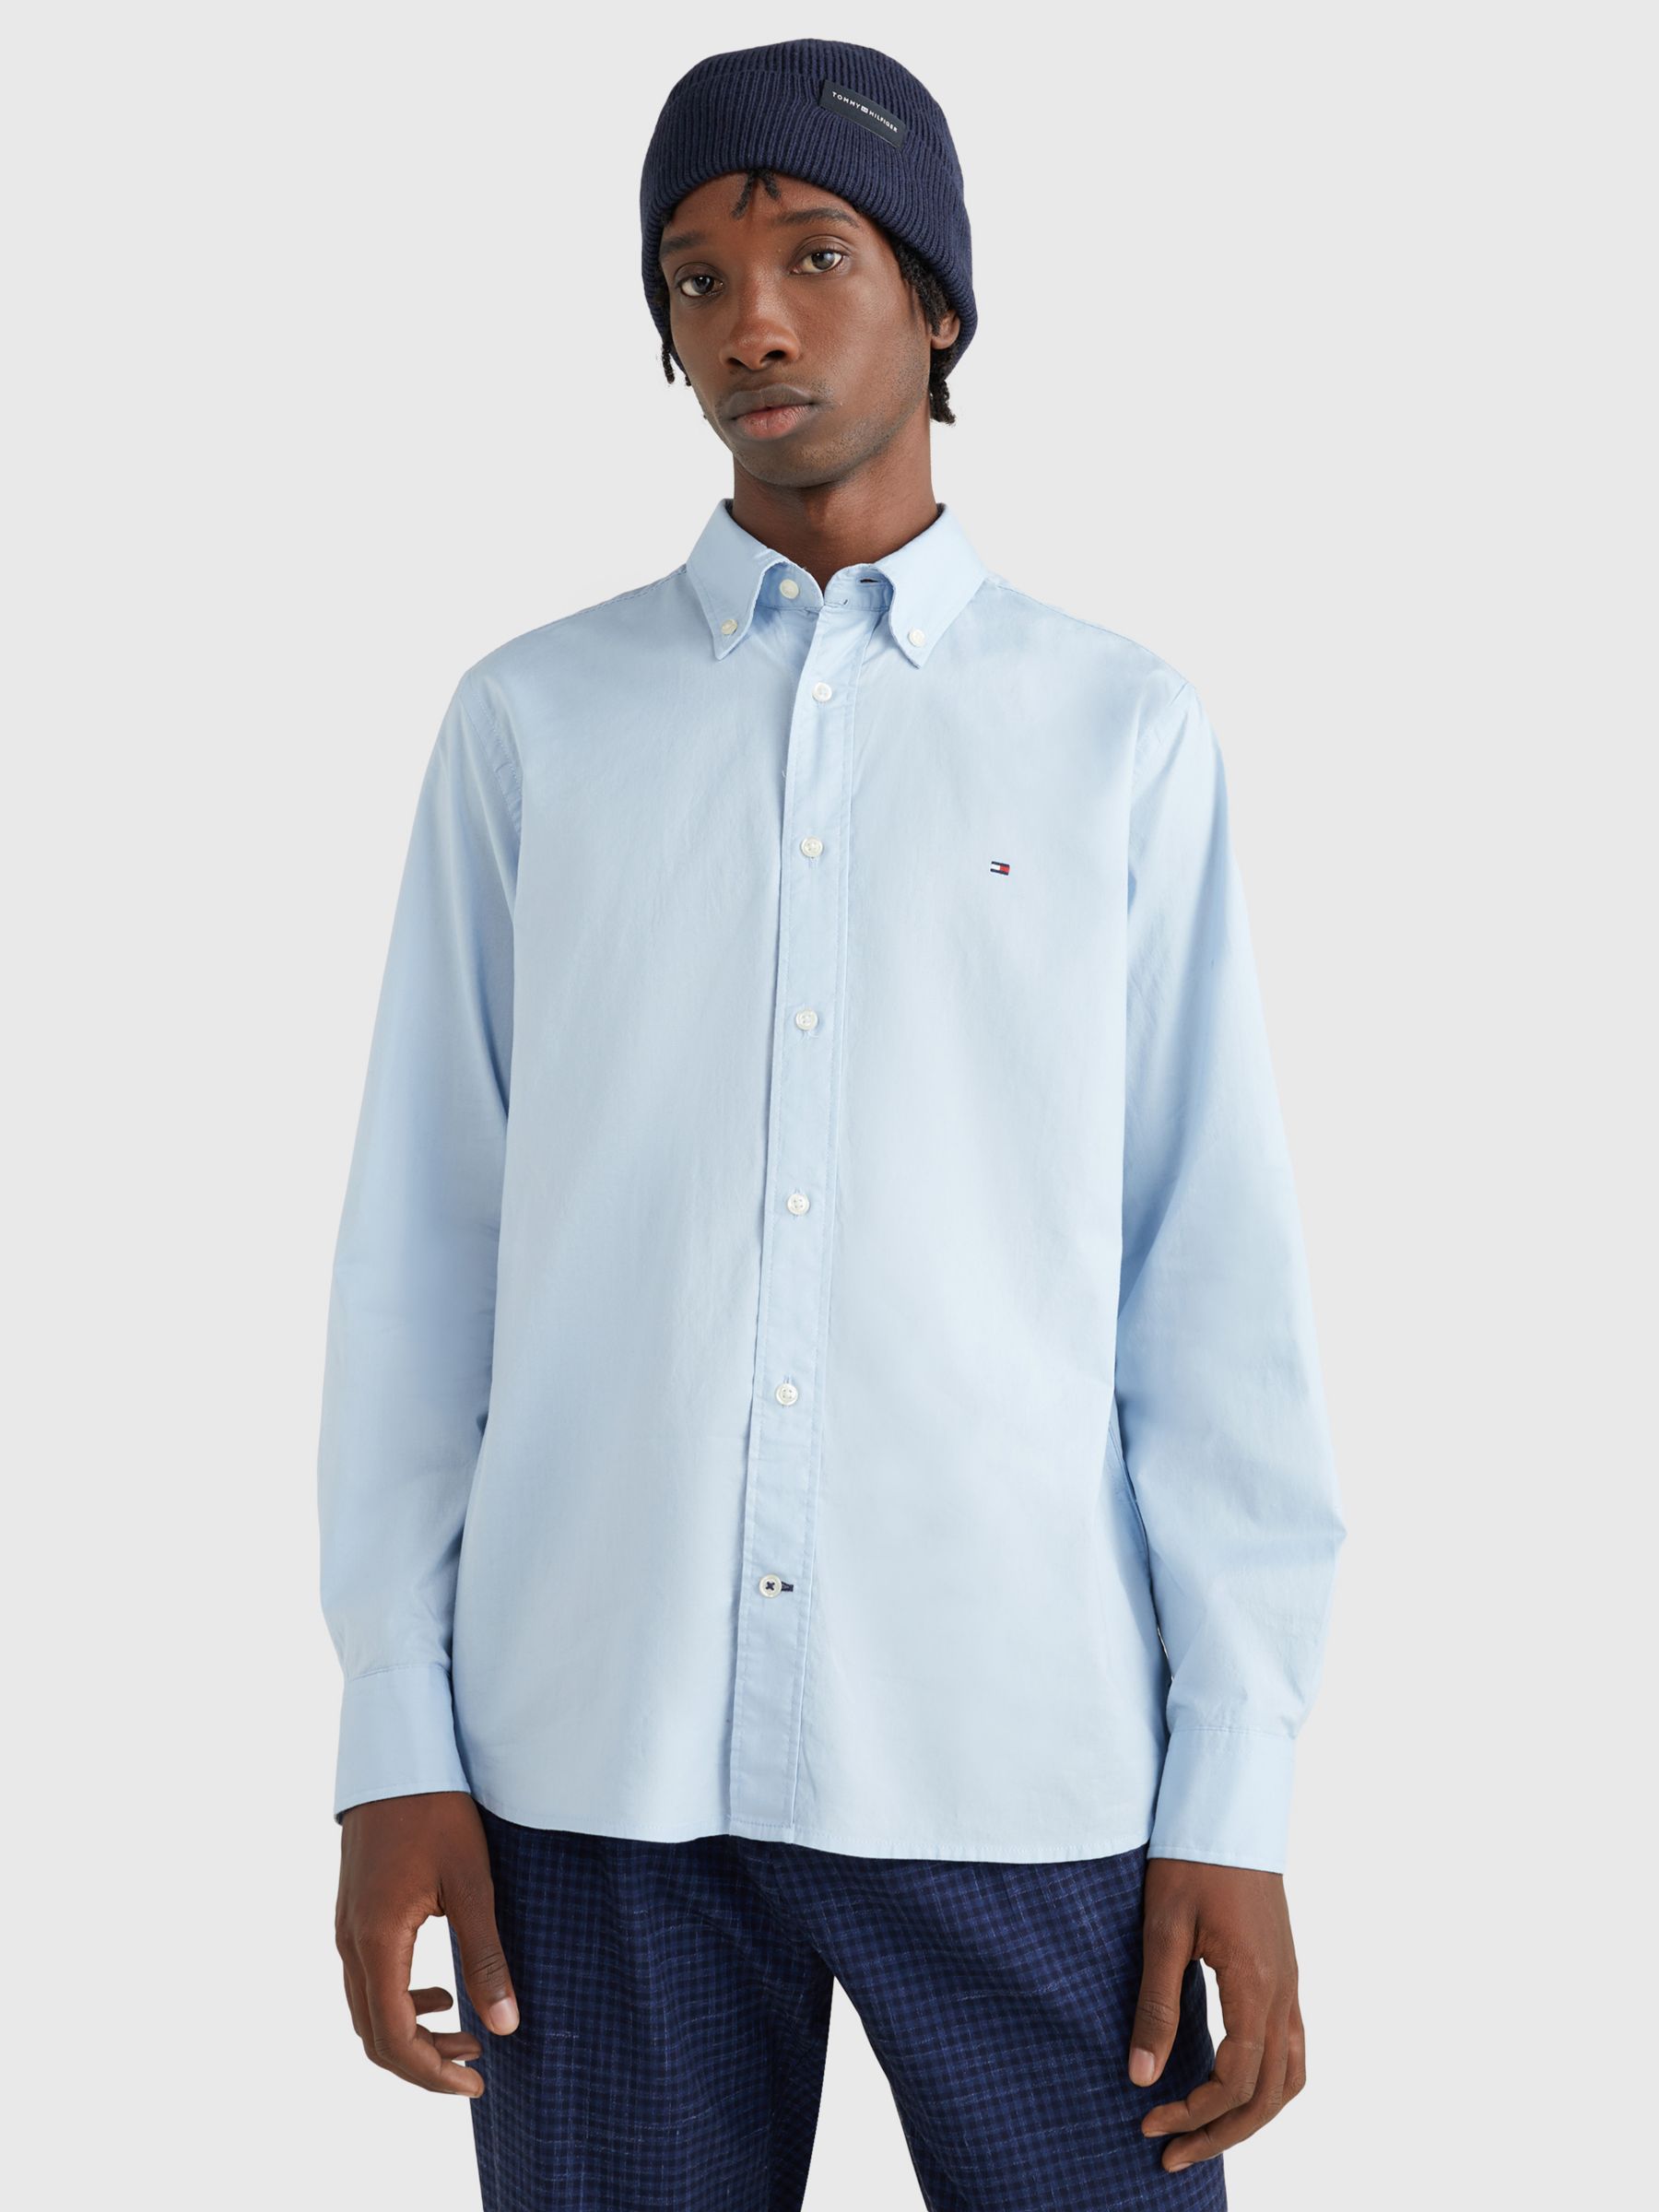 Tommy Hilfiger Core Flex Poplin Regular Fit Shirt, Calm Blue, XS